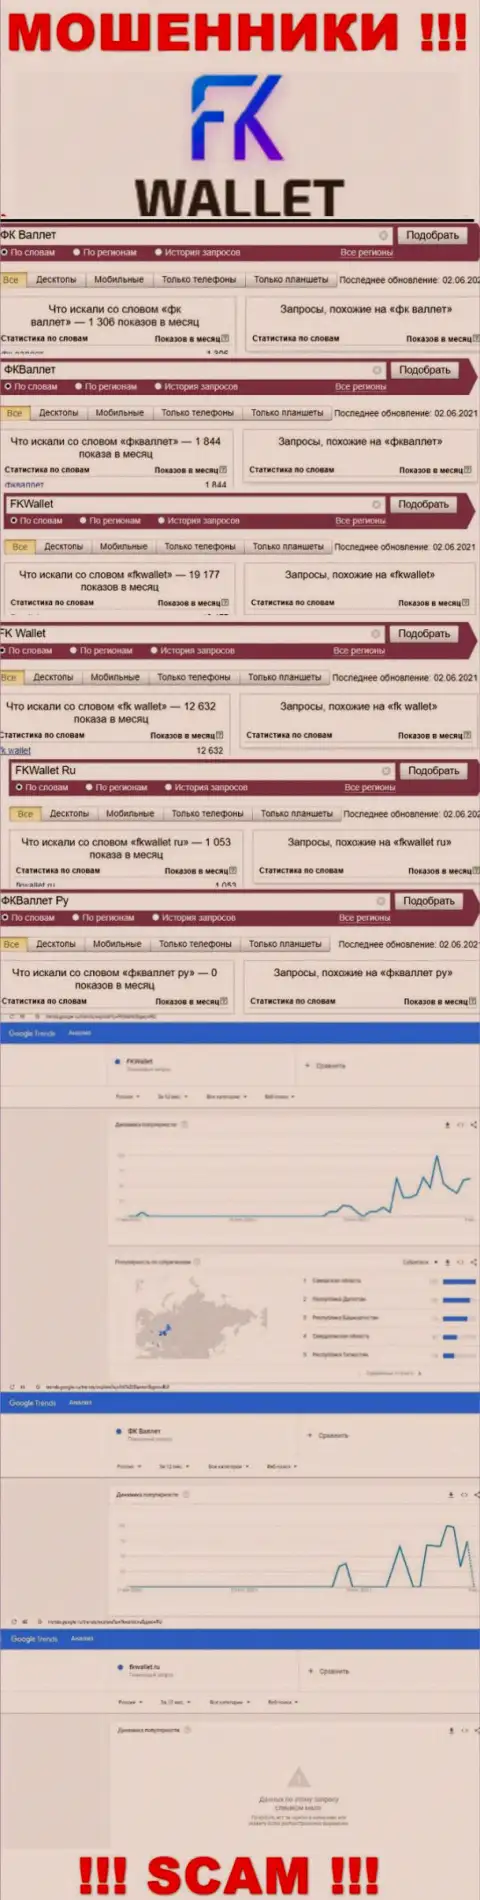 Скрин итога поисковых запросов по мошеннической компании FKWallet